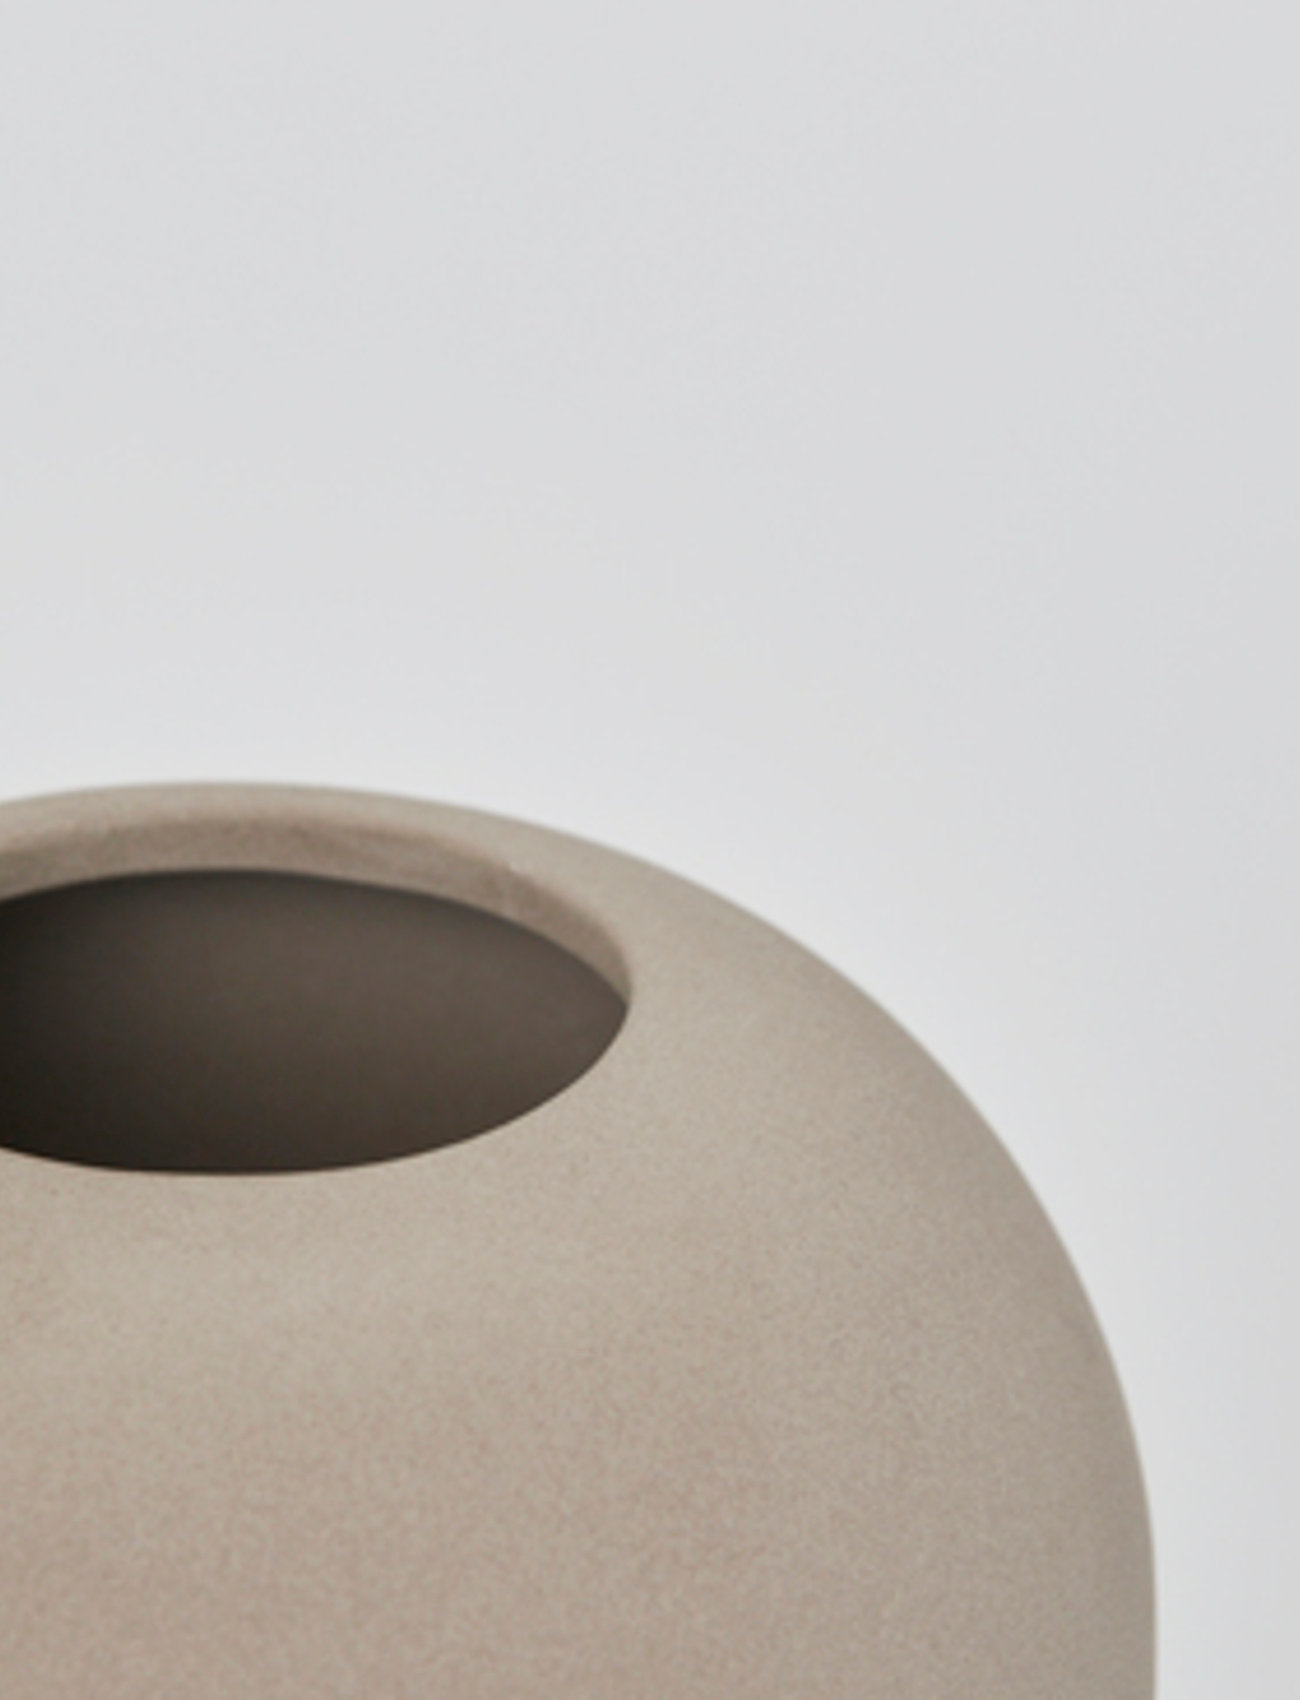 Kristina Dam Studio - Dome Vase Medium - big vases - terracotta - 1